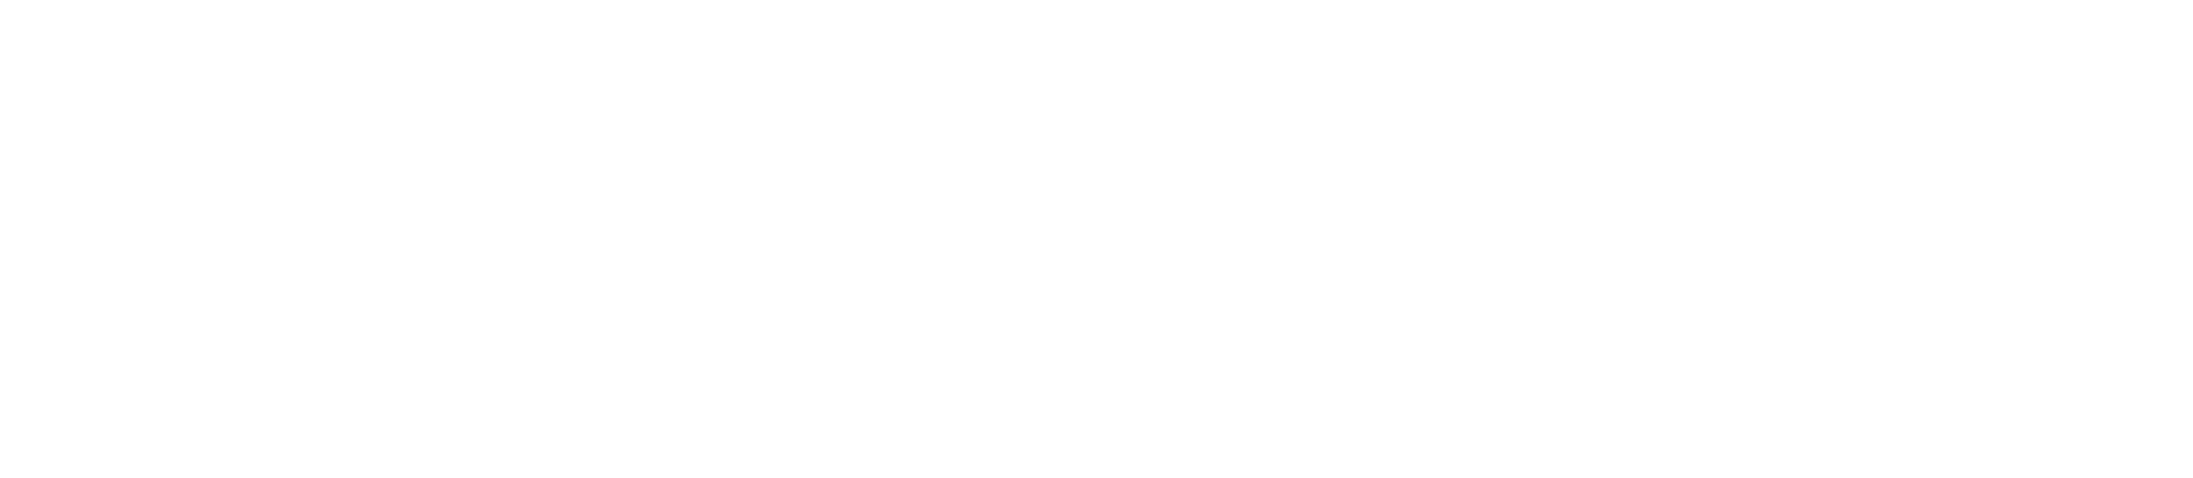 BrightPay_Logo_RGB-white